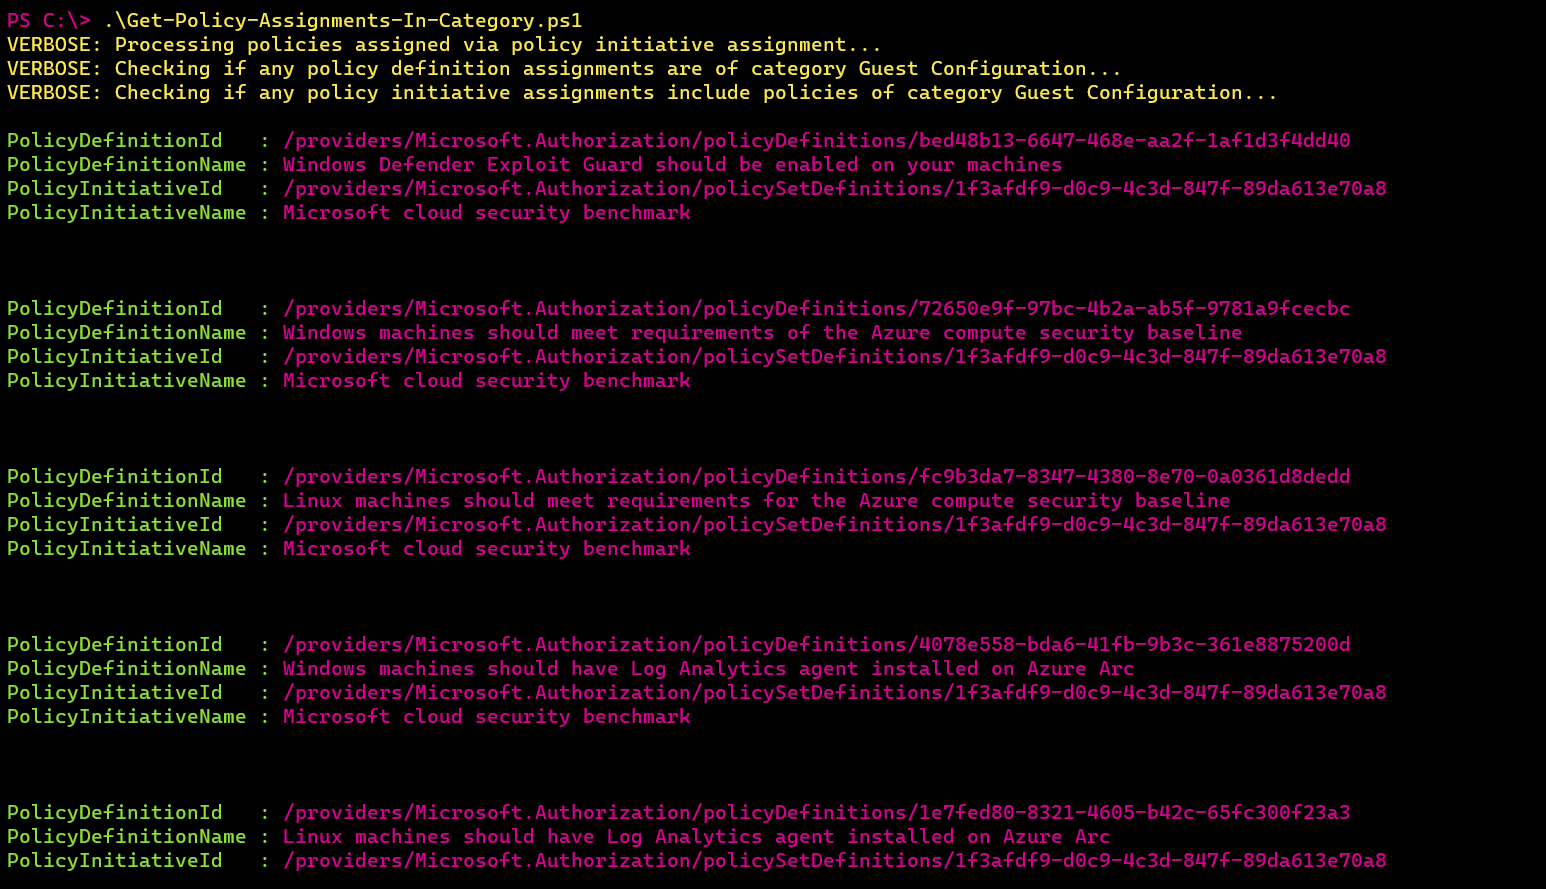 Screenshot of the PowerShell script output